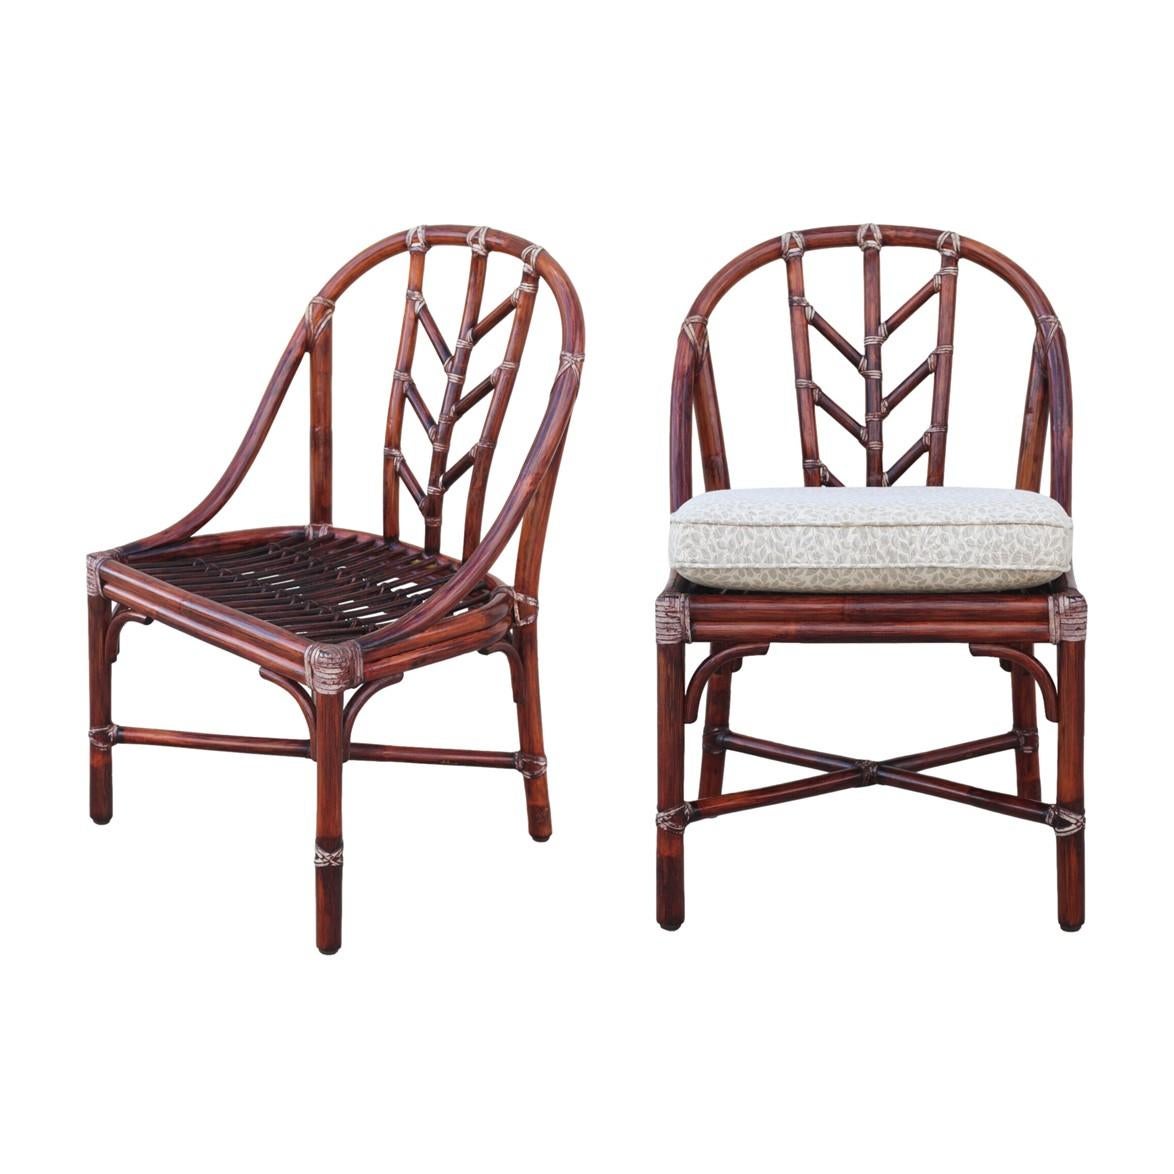 Magnifique paire de chaises de salle à manger A&M, conçues par Elinor One pour McGuire San Francisco. Les chaises ont la finition d'origine et présentent les fixations en cuir brut tressé de McGuire, signature de McGuire, avec une patine vieillie,